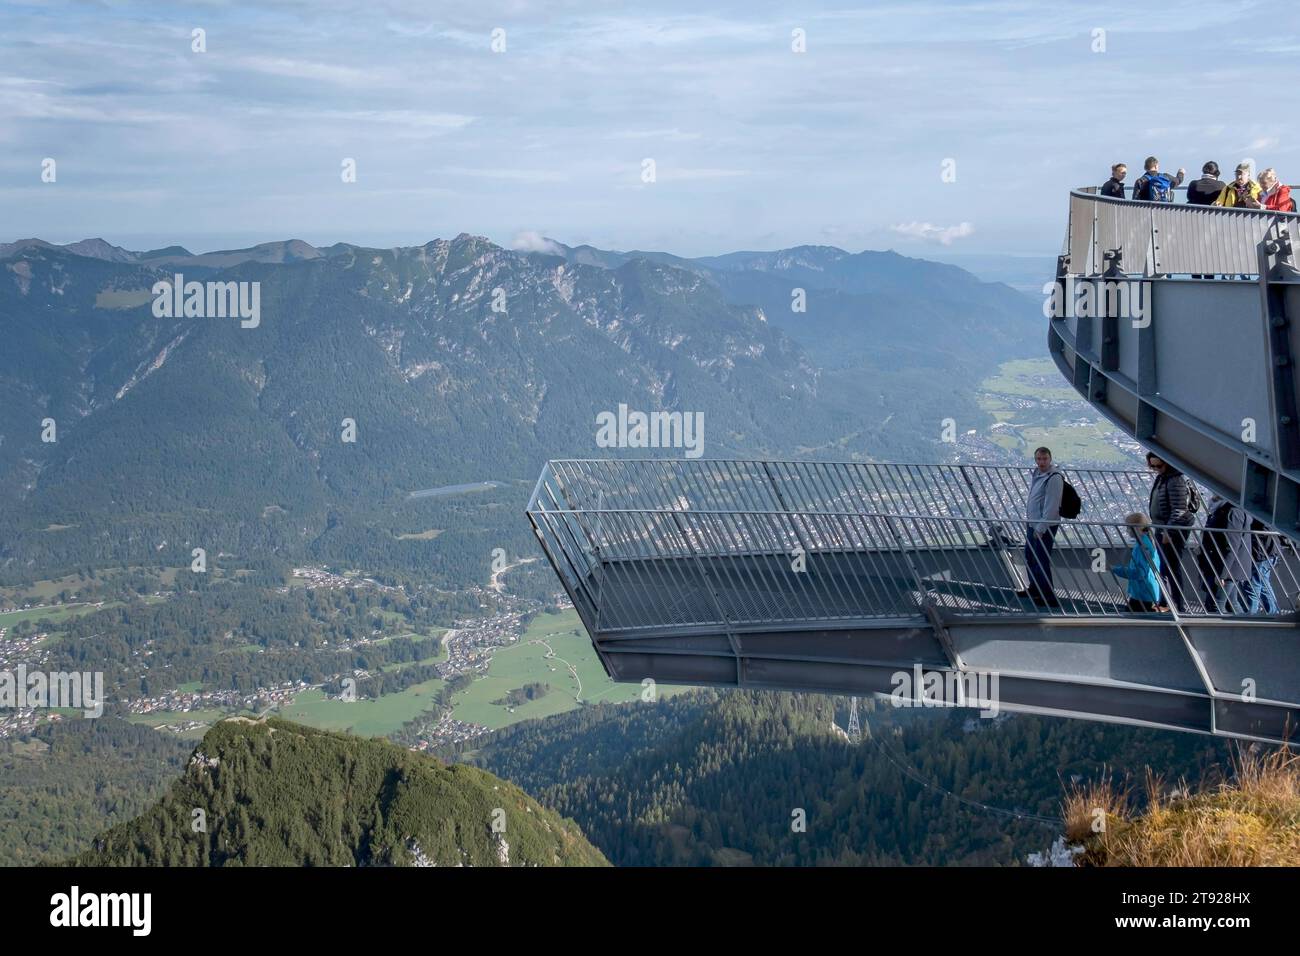 AlpspiX, viewing platform at the Alpspitzbahn, mountain station, Alpspitze, Wetterstein range, Garmisch-Partenkirchen, Upper Bavaria, Bavaria, Germany Stock Photo